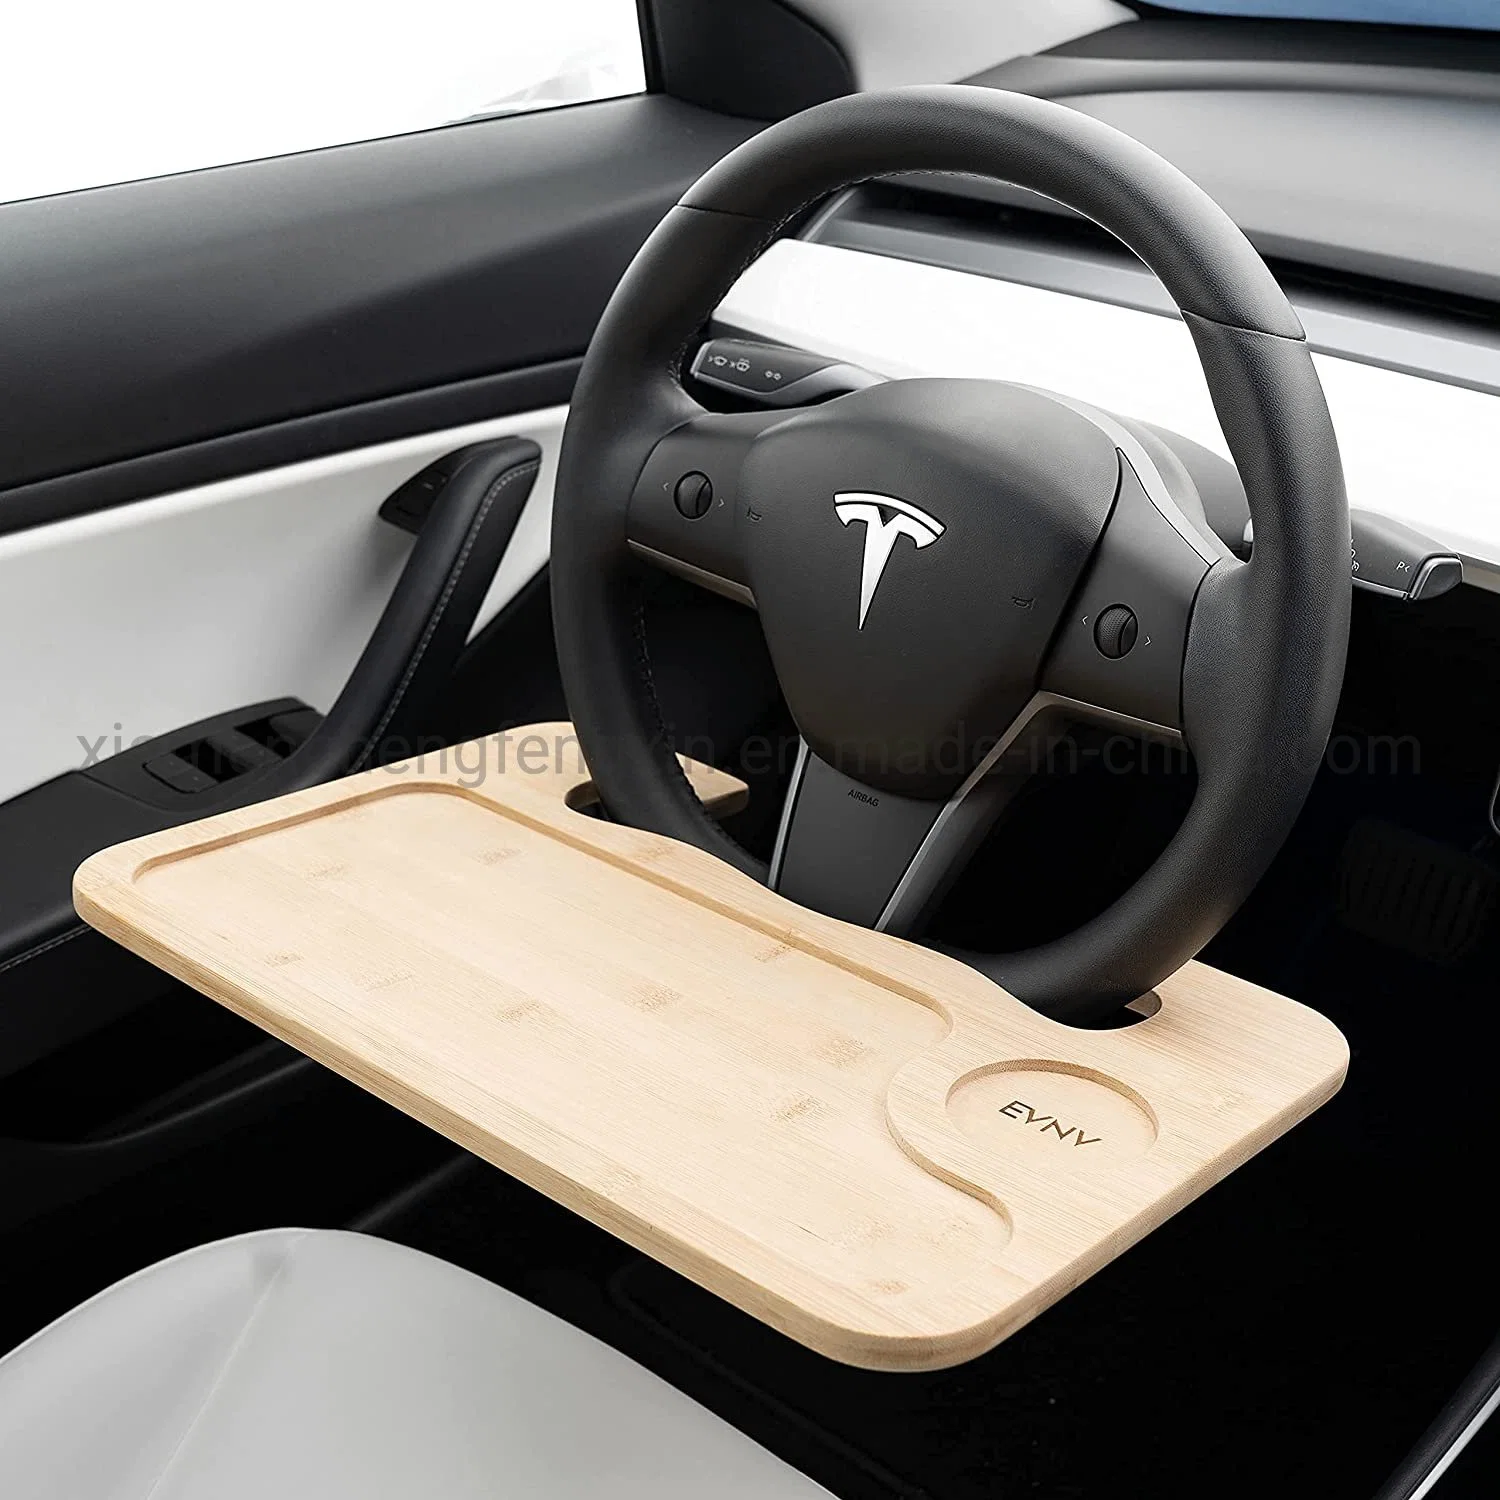 Volante de direcção Bandeja - Almoçar confortavelmente em seu carro - Computador portátil de automóveis de turismo para trabalhar remotamente - Ajusta a maioria dos carros incluindo Modelo Tesla